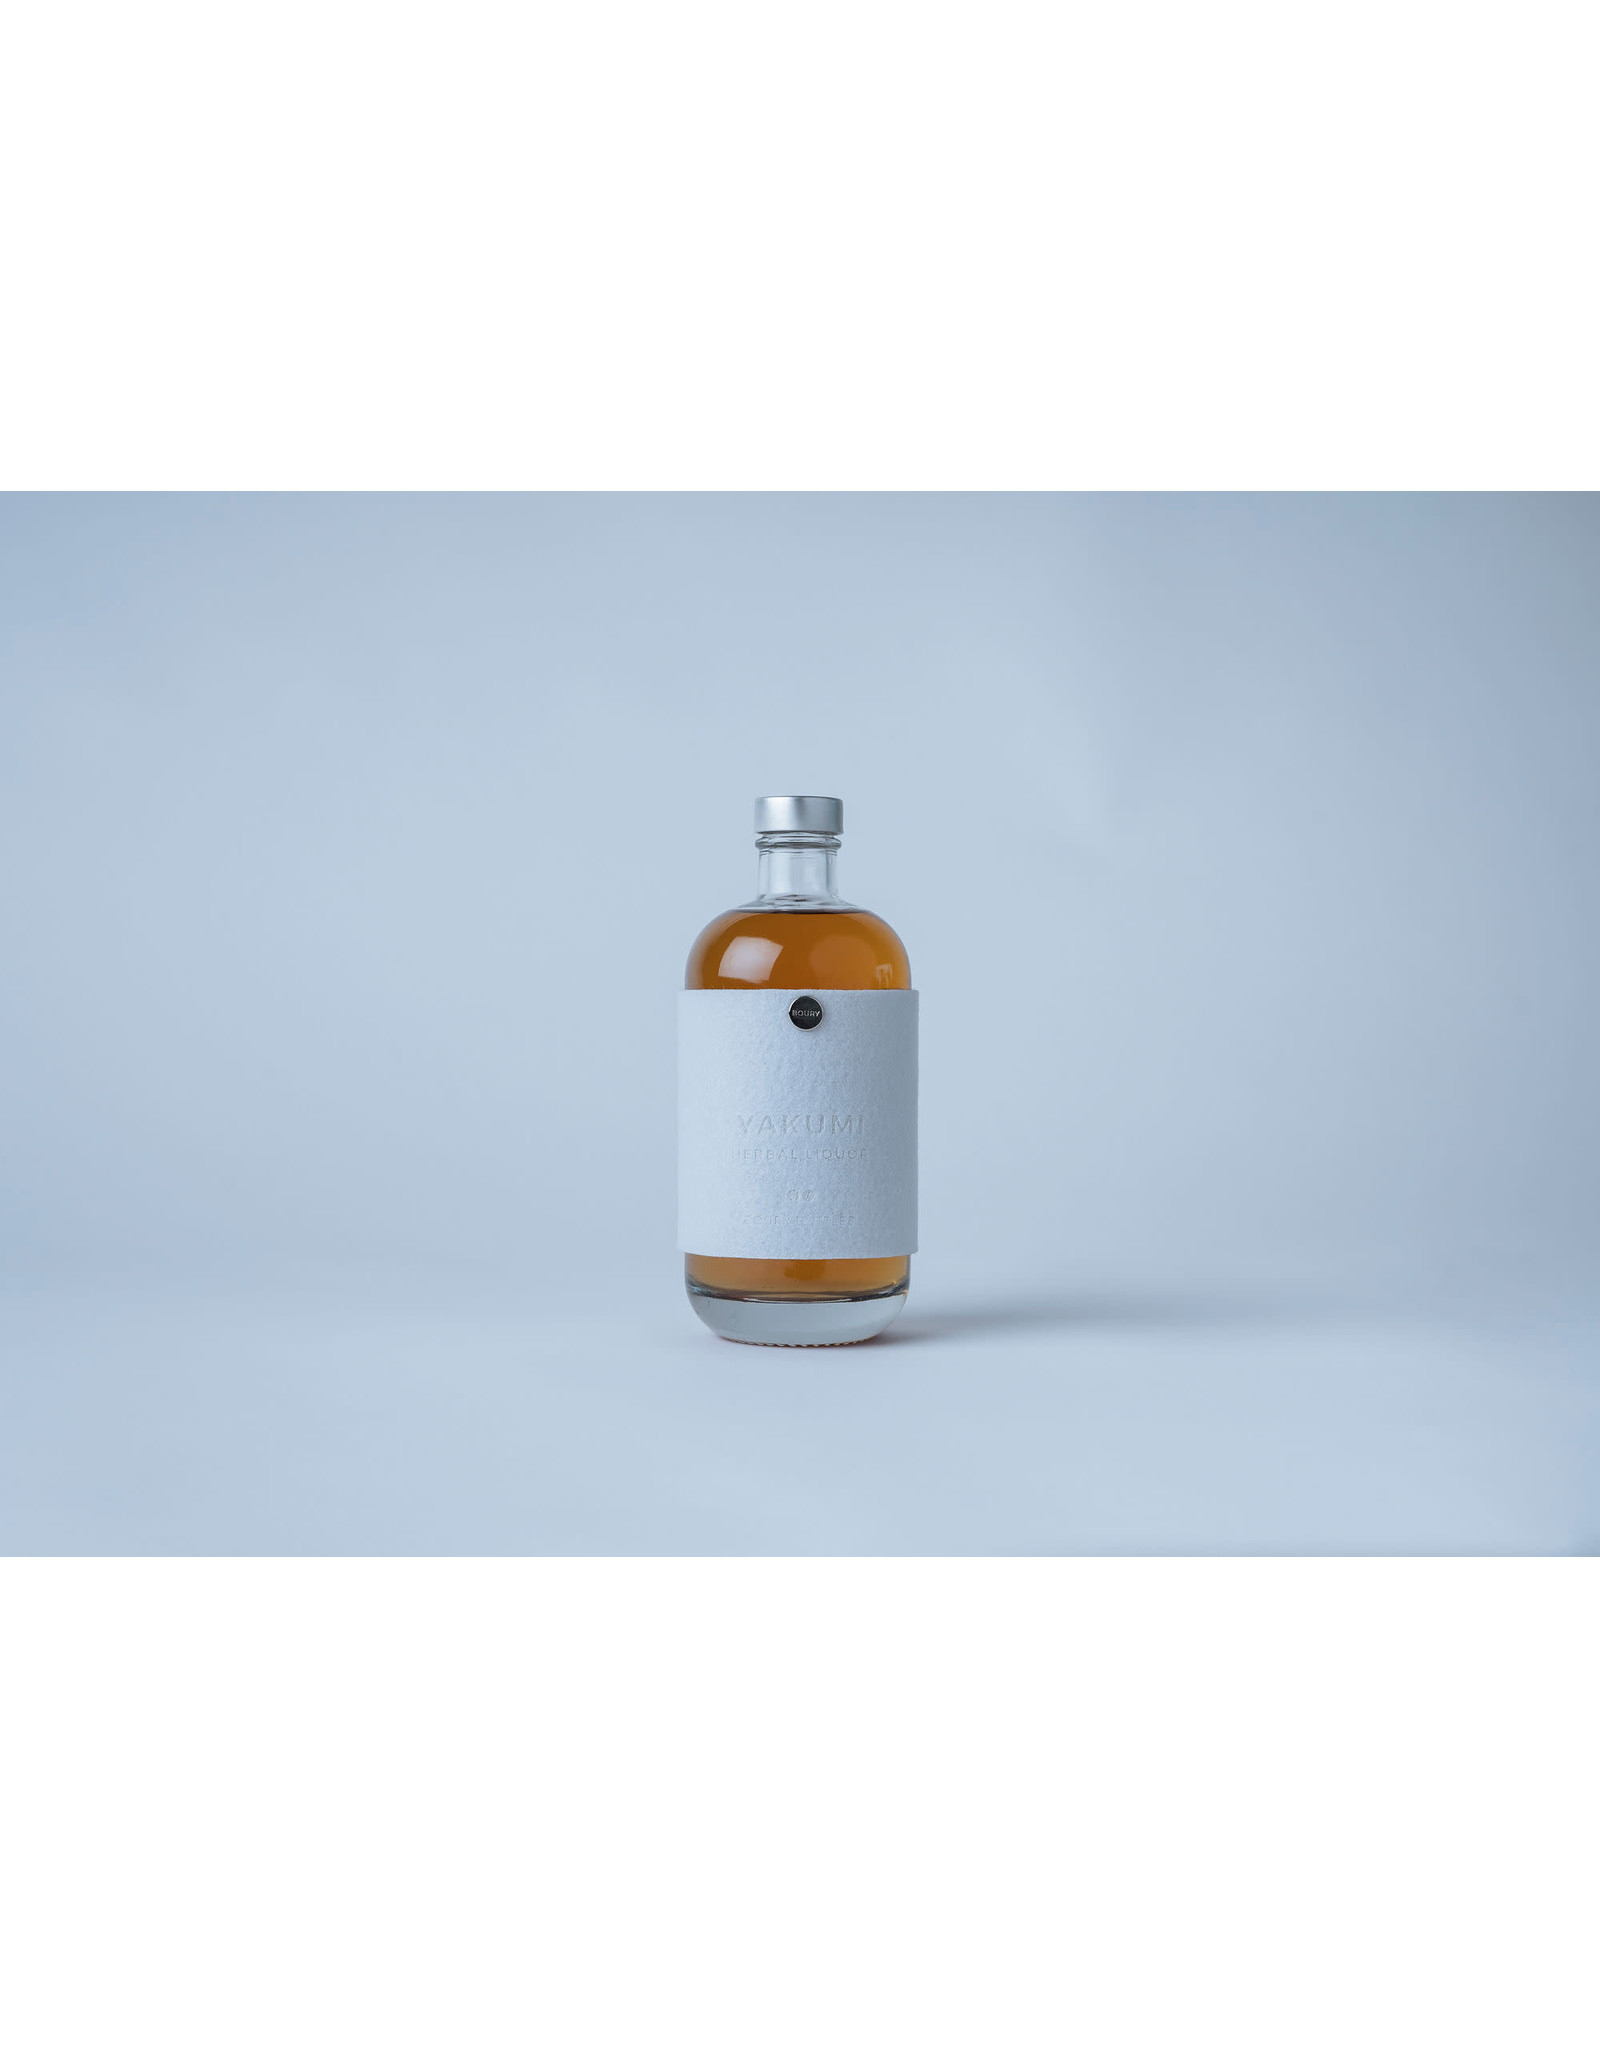 Boury Bottled 50cL Yakumi Herbal Liquor